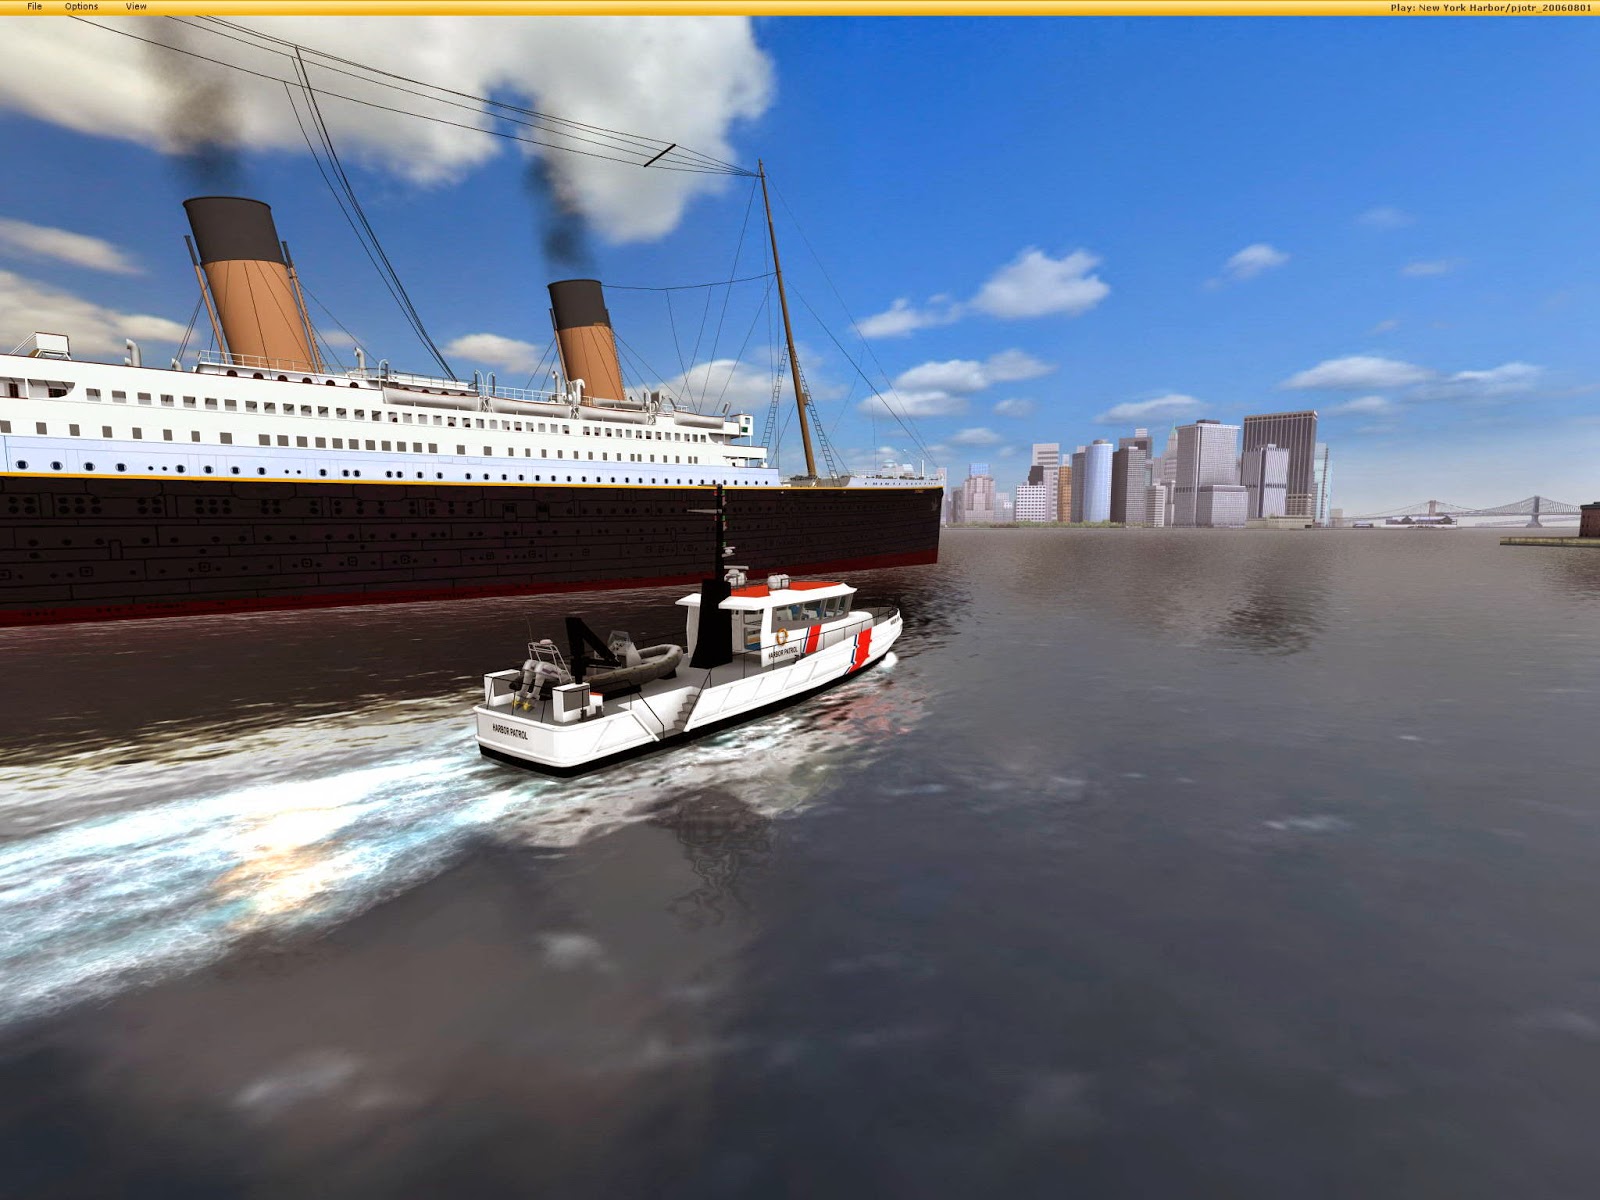 european ship simulator pc game free download full version